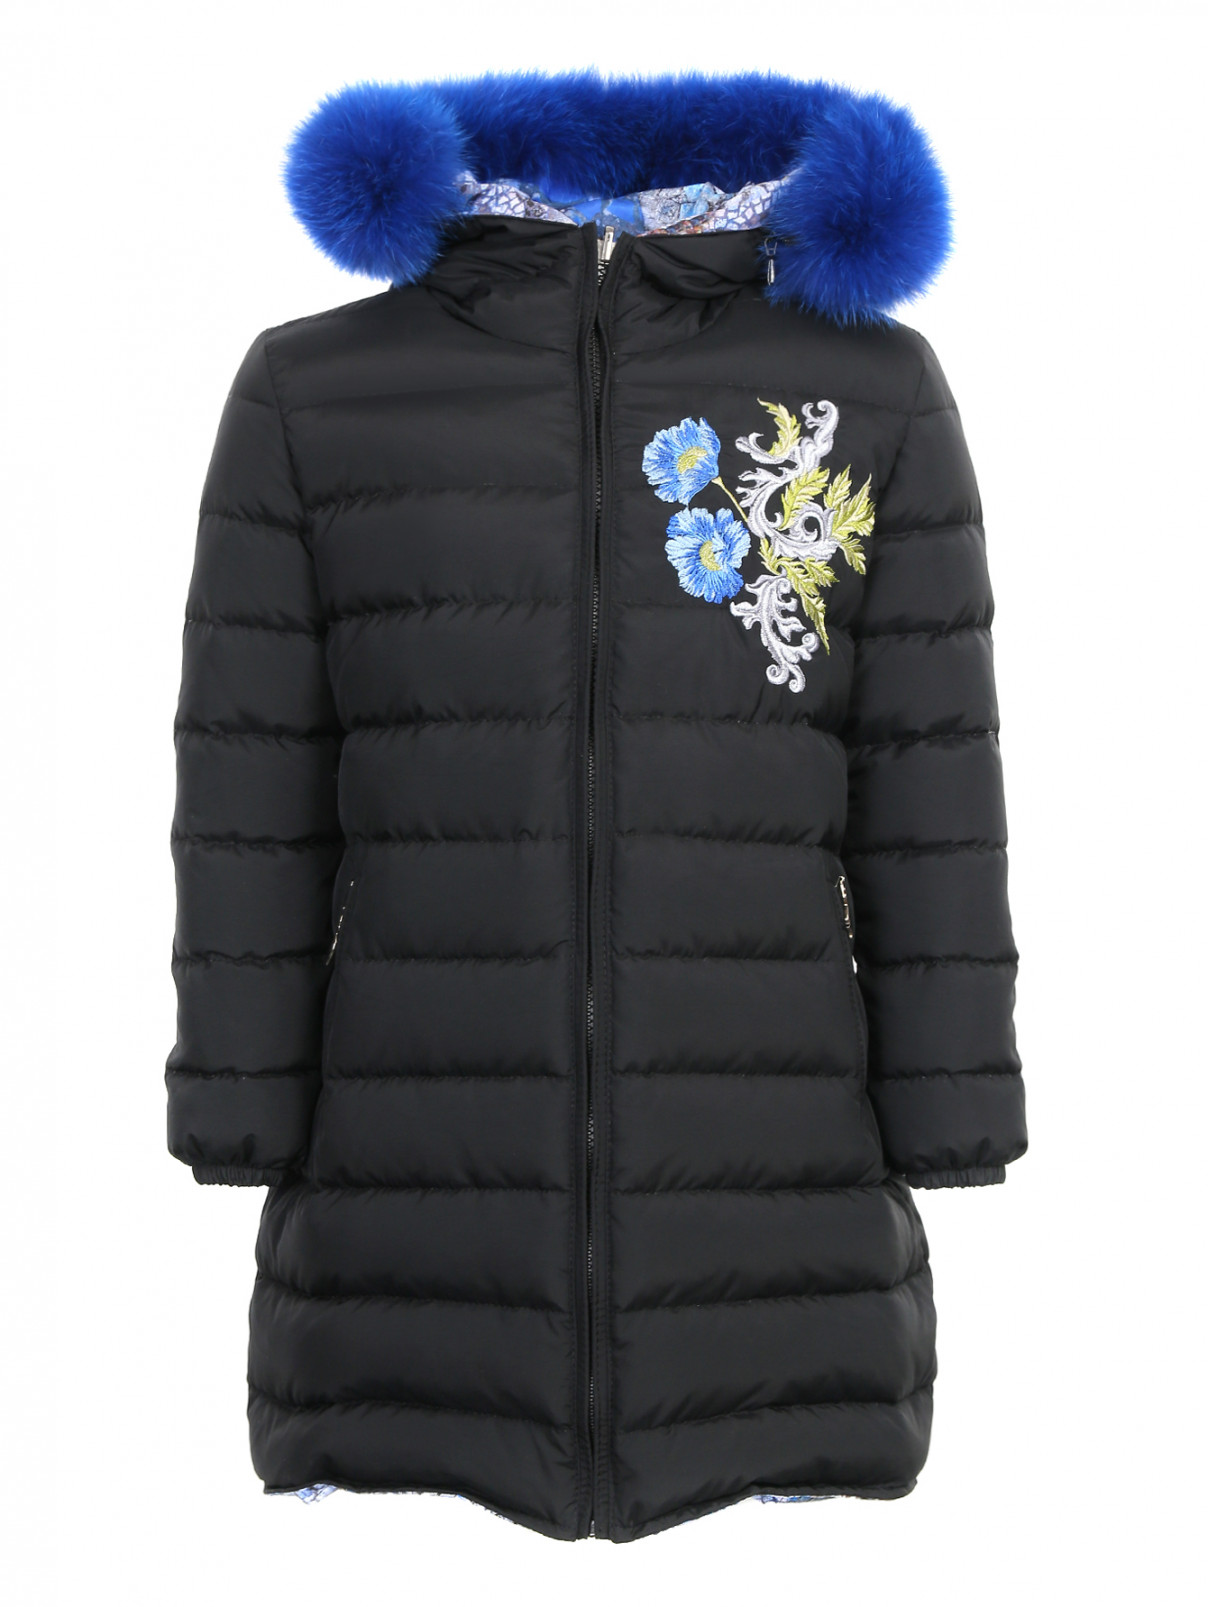 Пальто пуховое с мехом на капюшоне и вышивкой Manudieci  –  Общий вид  – Цвет:  Черный